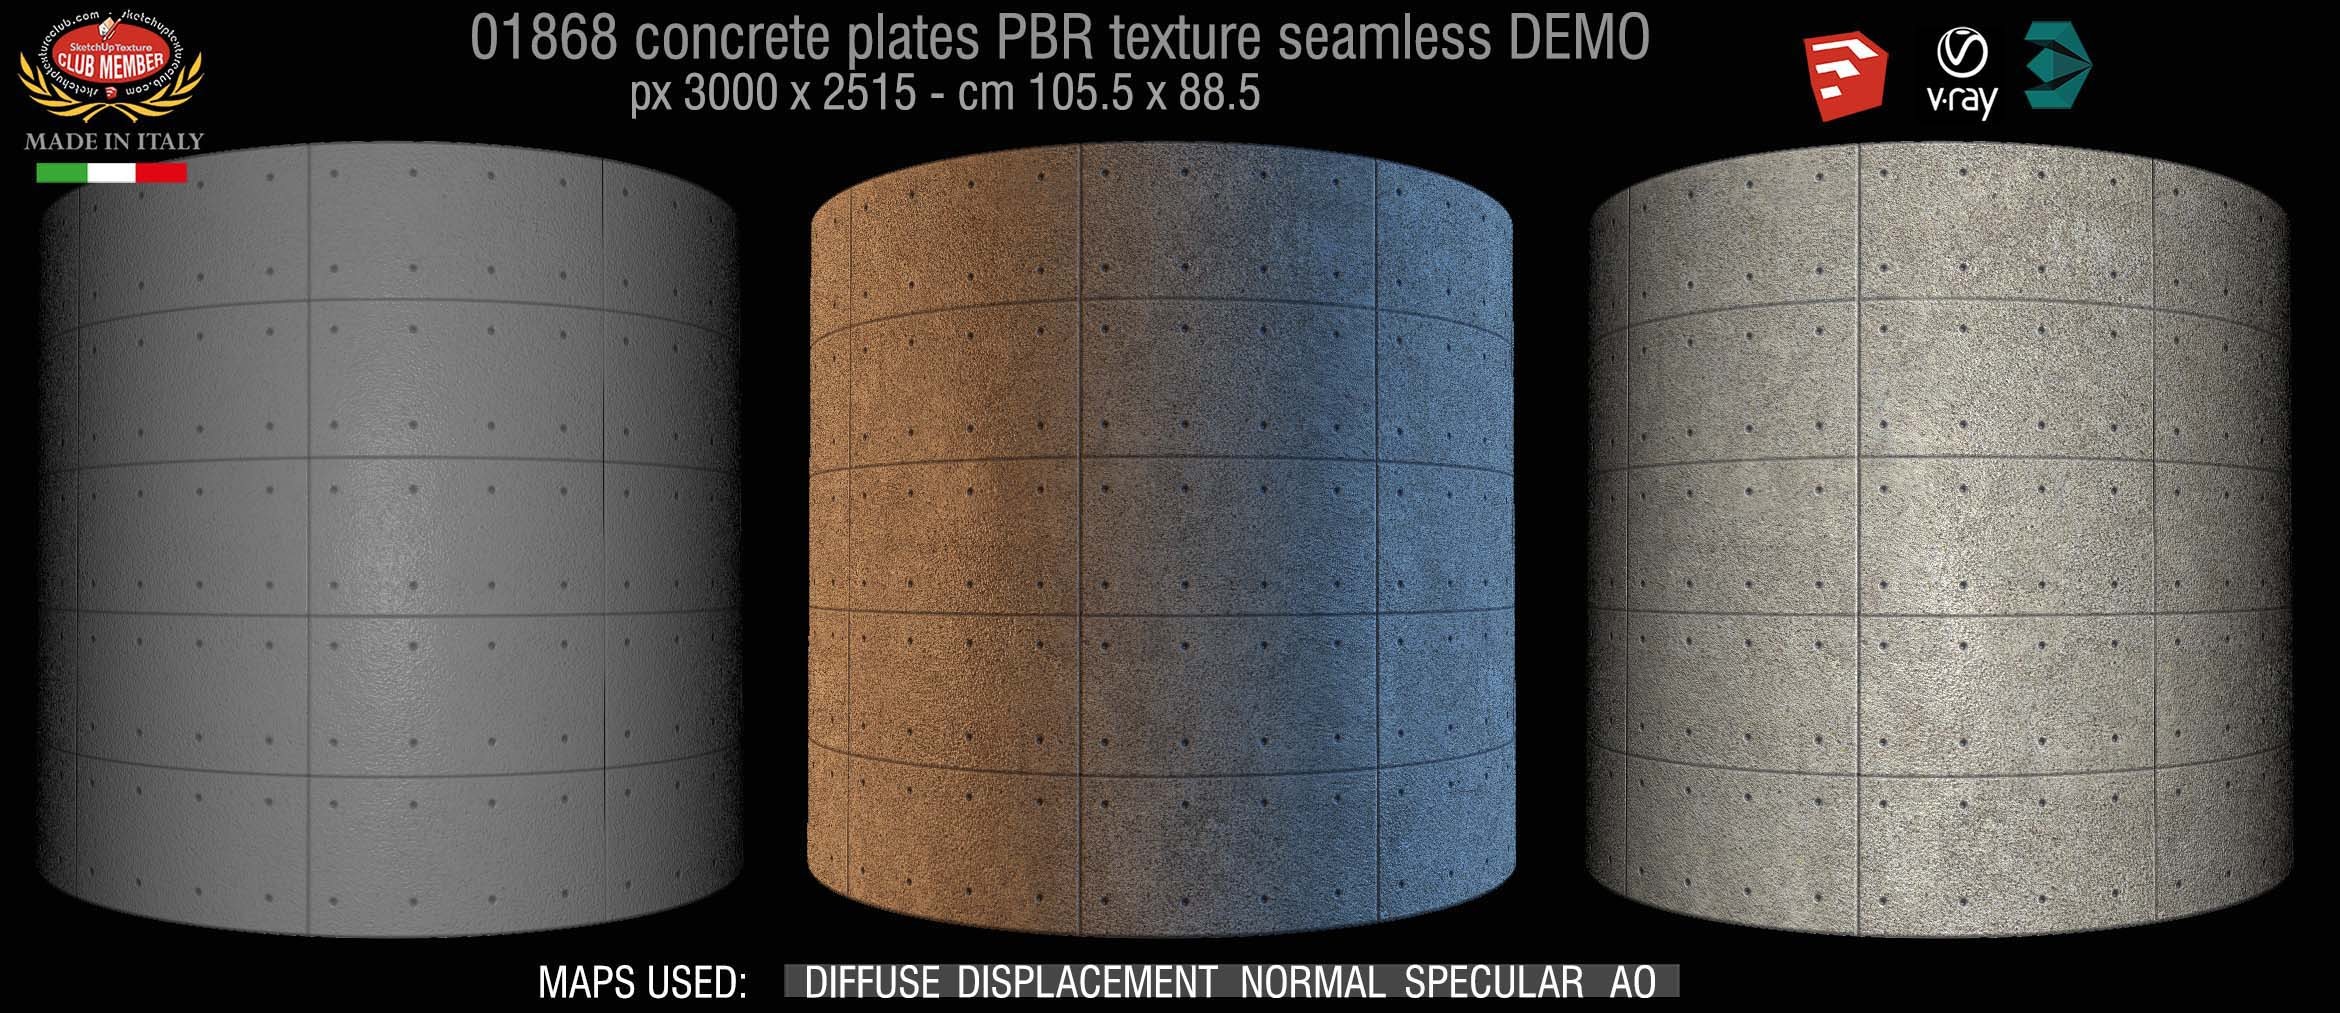 01868 Tadao Ando concrete plates PBR texture seamless DEMO